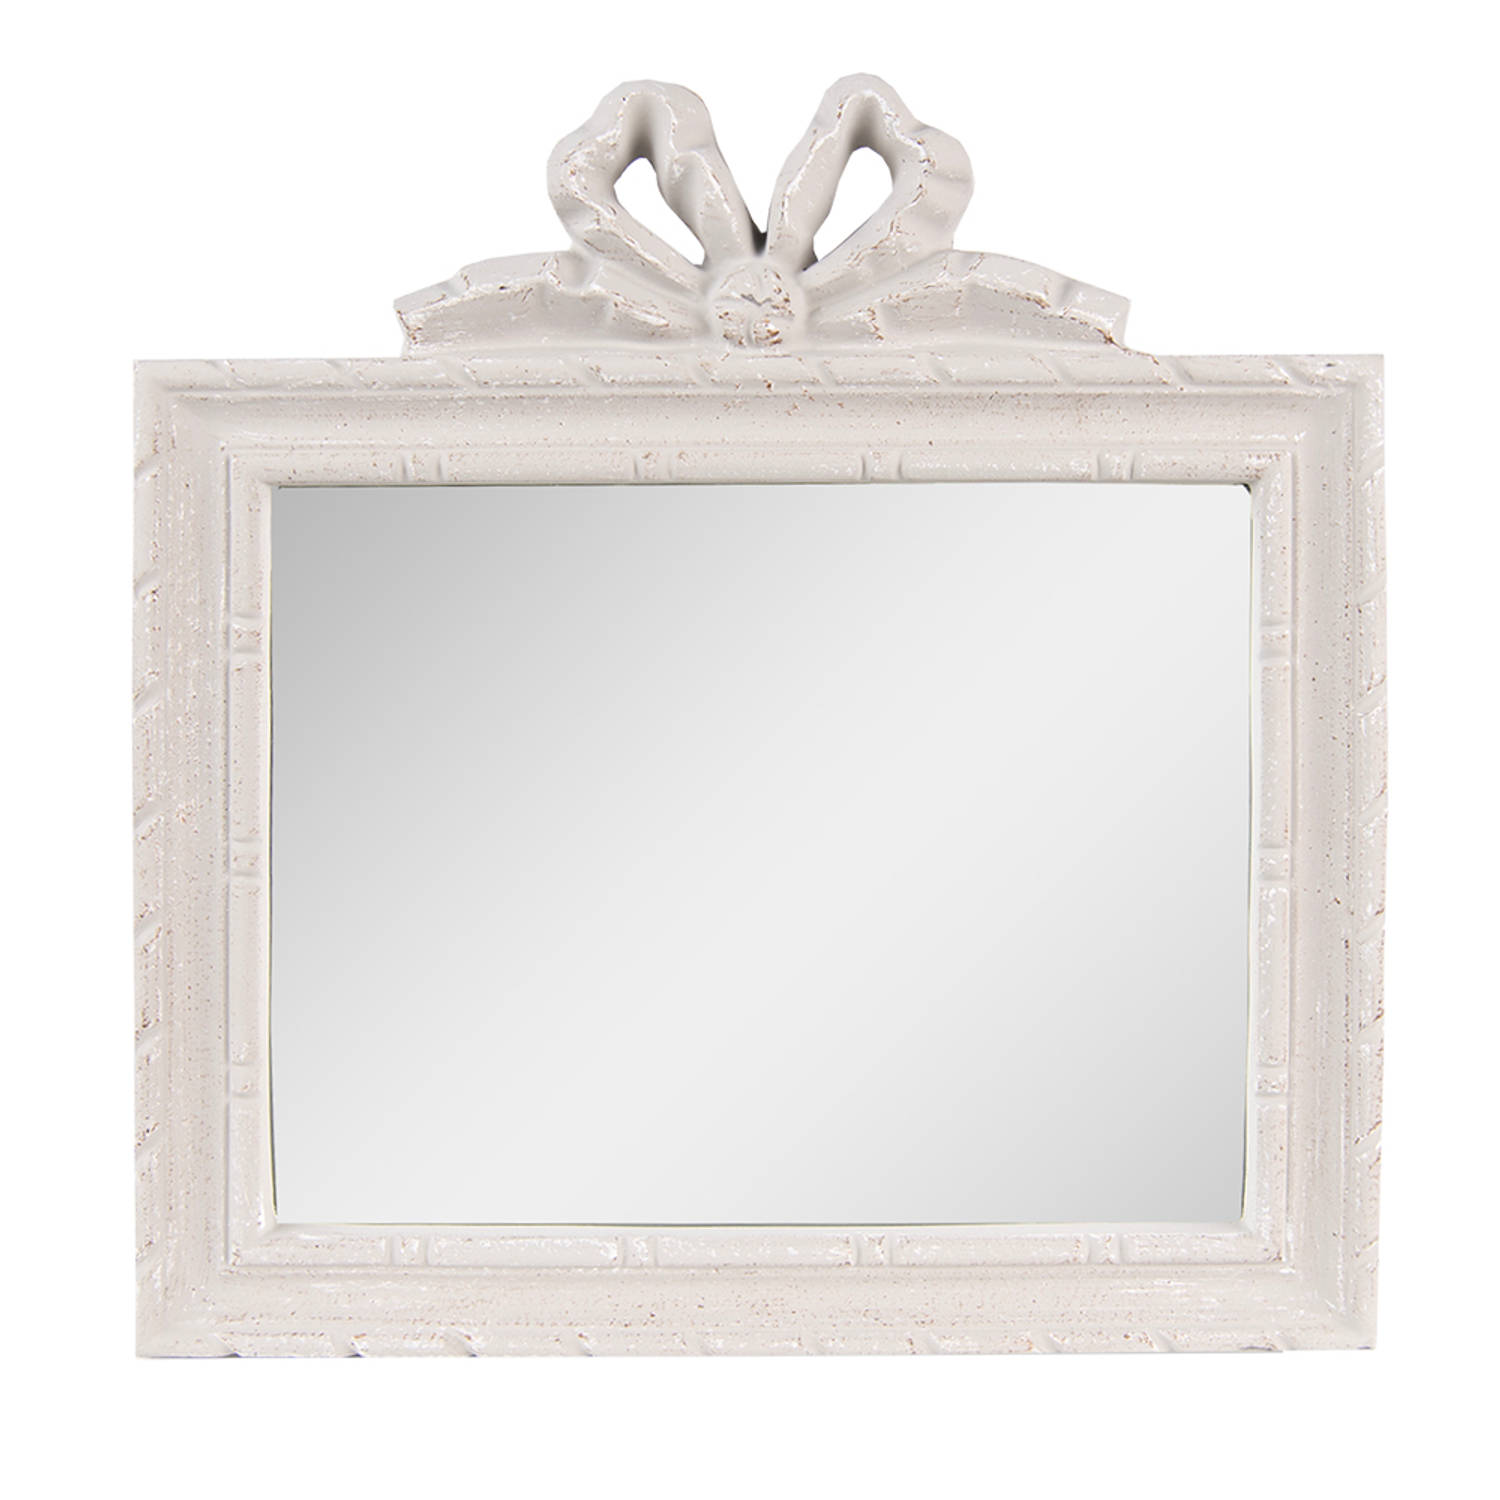 HAES DECO Rechthoekige Spiegel met Strikje Grijs 30x2x31 cm Polyurethaan ( PU) Wandspiegel, Spiegel 